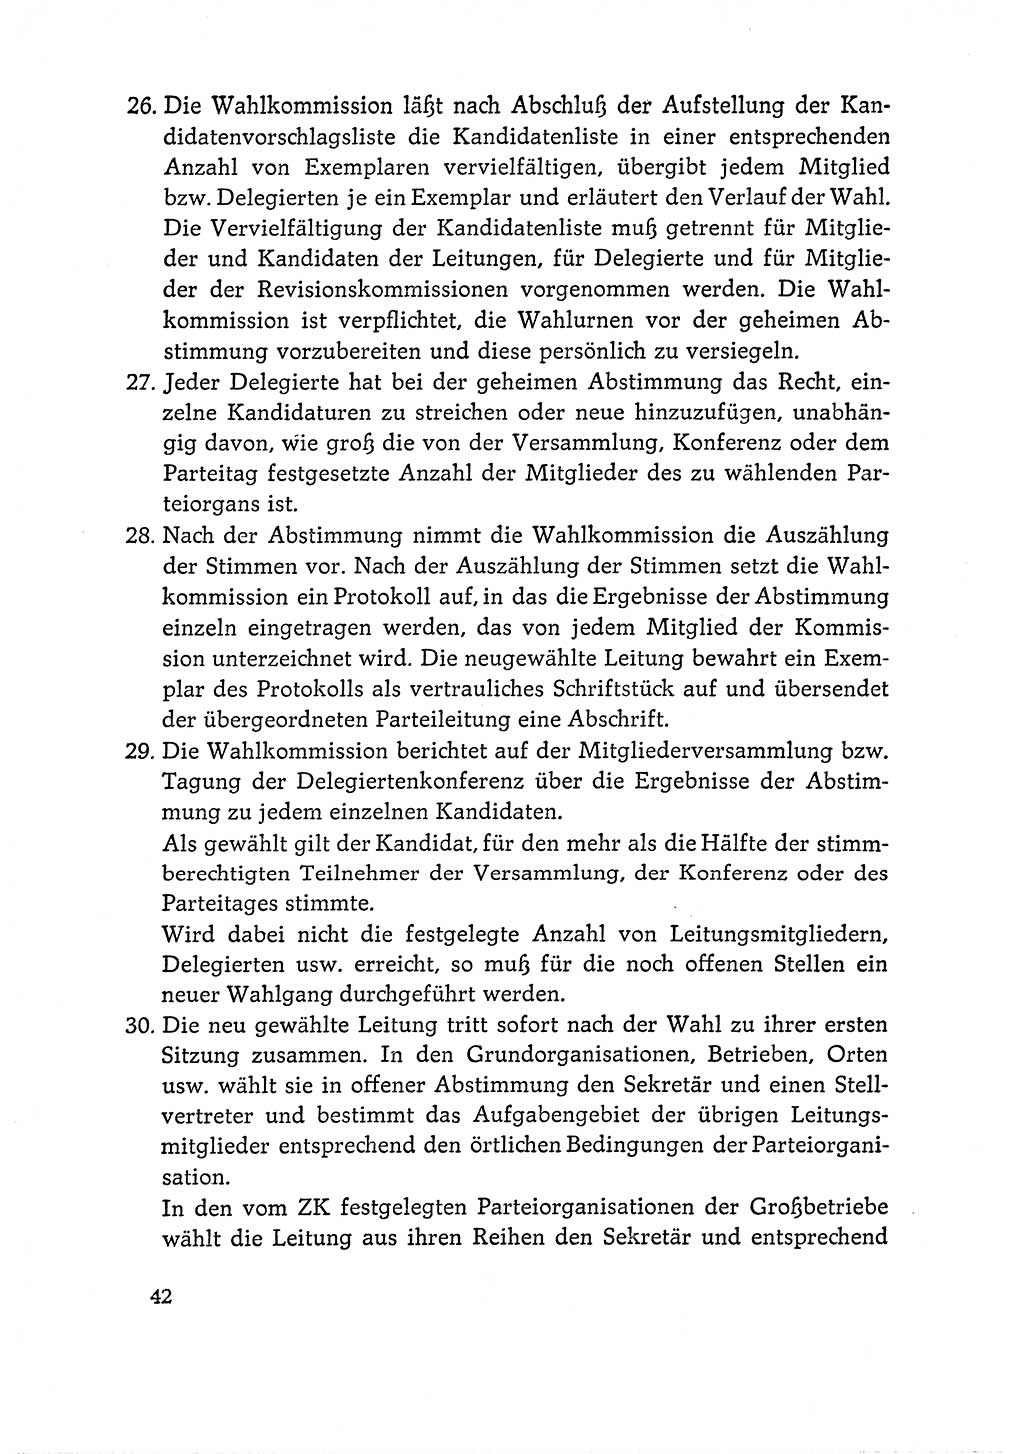 Dokumente der Sozialistischen Einheitspartei Deutschlands (SED) [Deutsche Demokratische Republik (DDR)] 1964-1965, Seite 42 (Dok. SED DDR 1964-1965, S. 42)